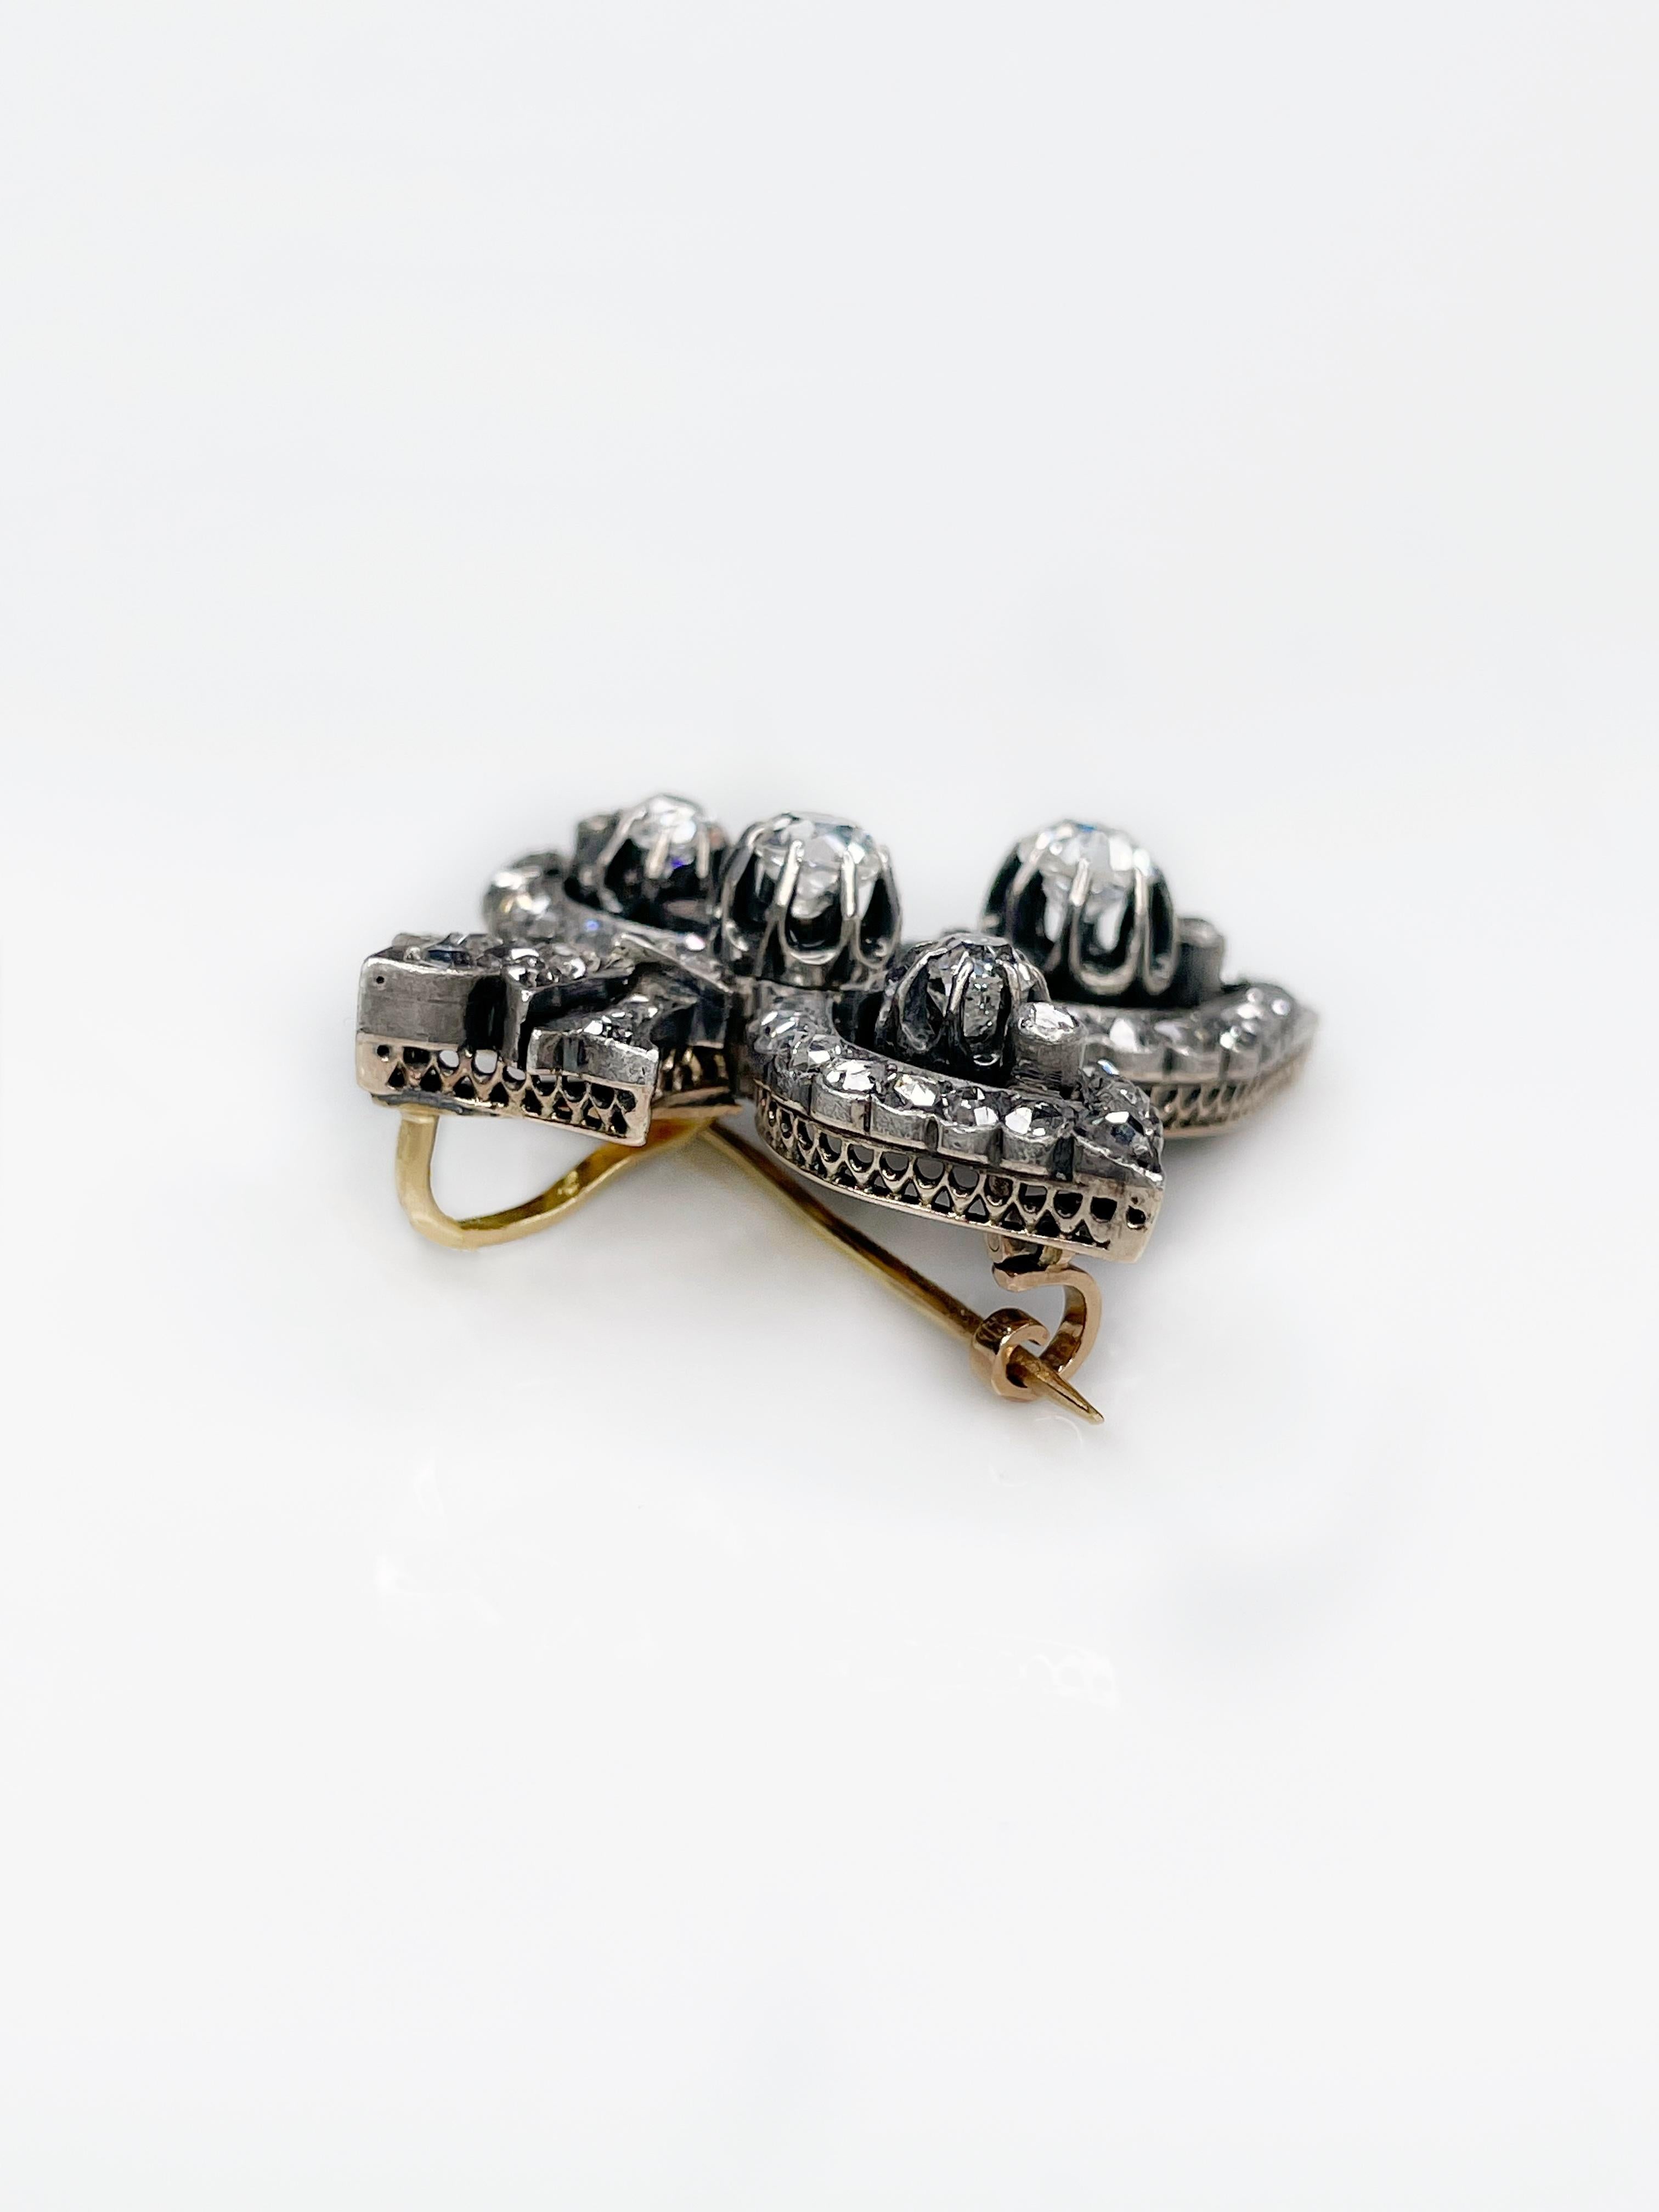 Women's or Men's Antique 14K Gold “Fleur-de-lis” Diamond Brooch Pendant XIX Century